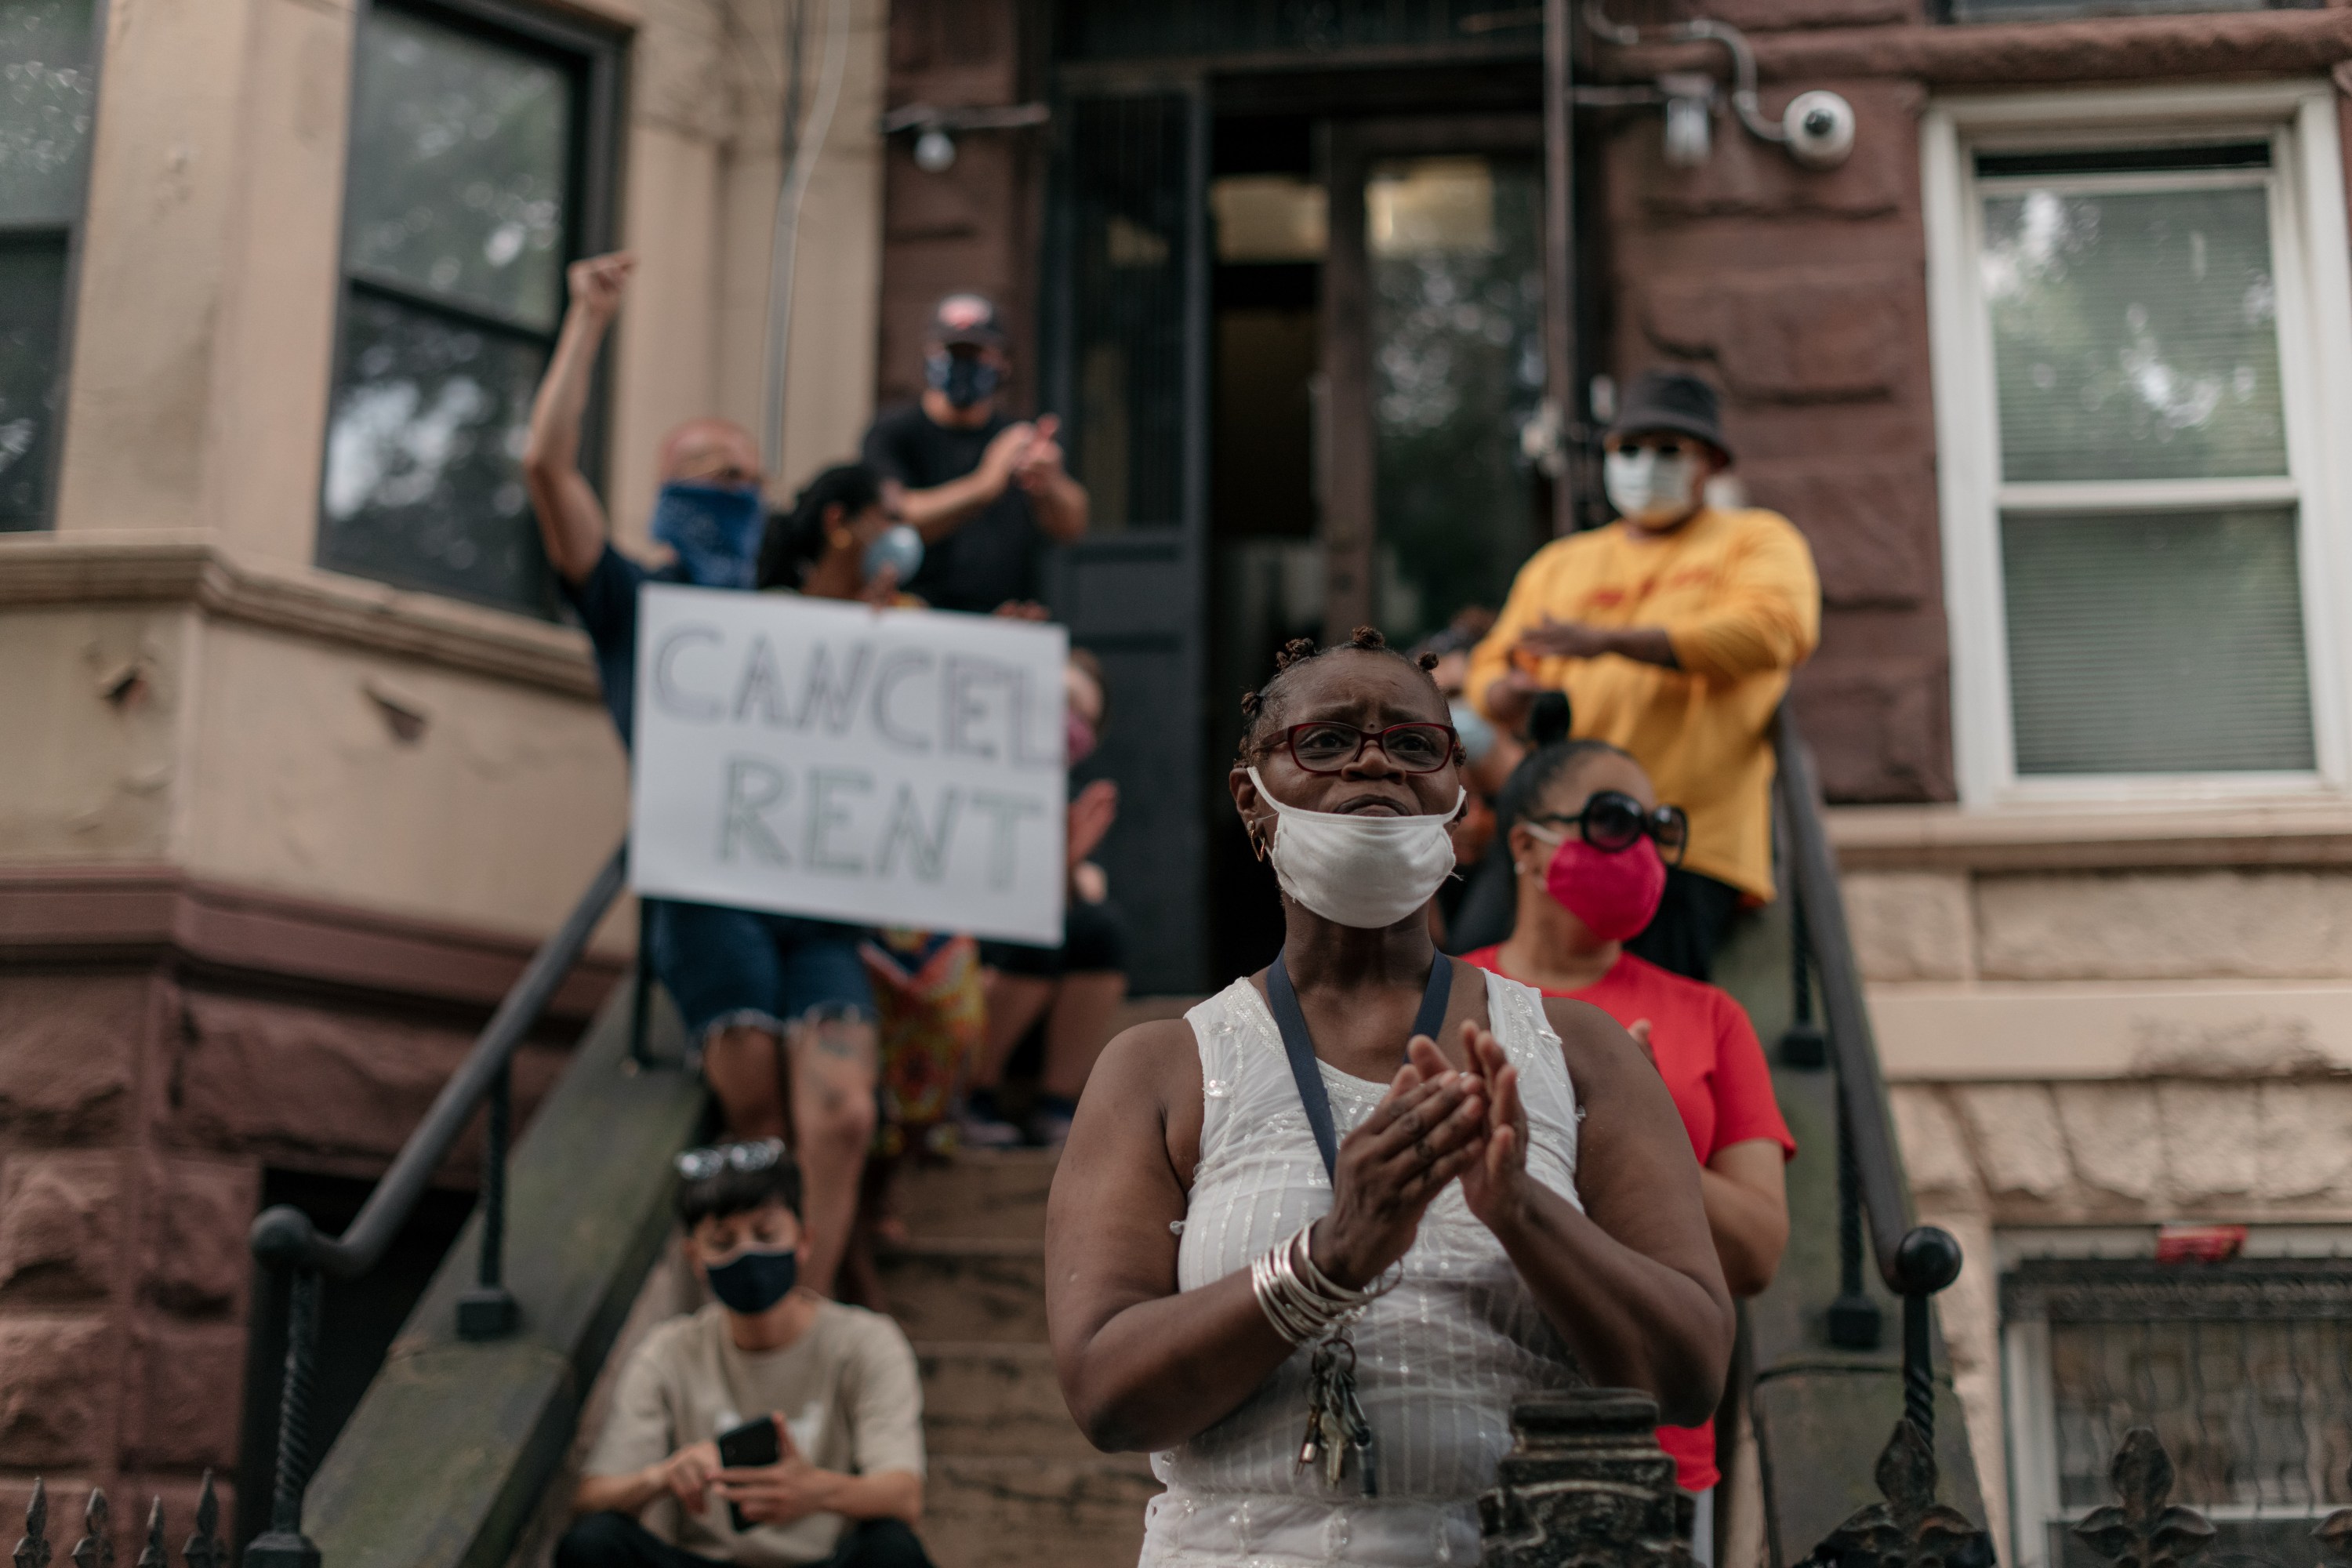 Los activistas se reúnen en Brooklyn para cancelar el alquiler.